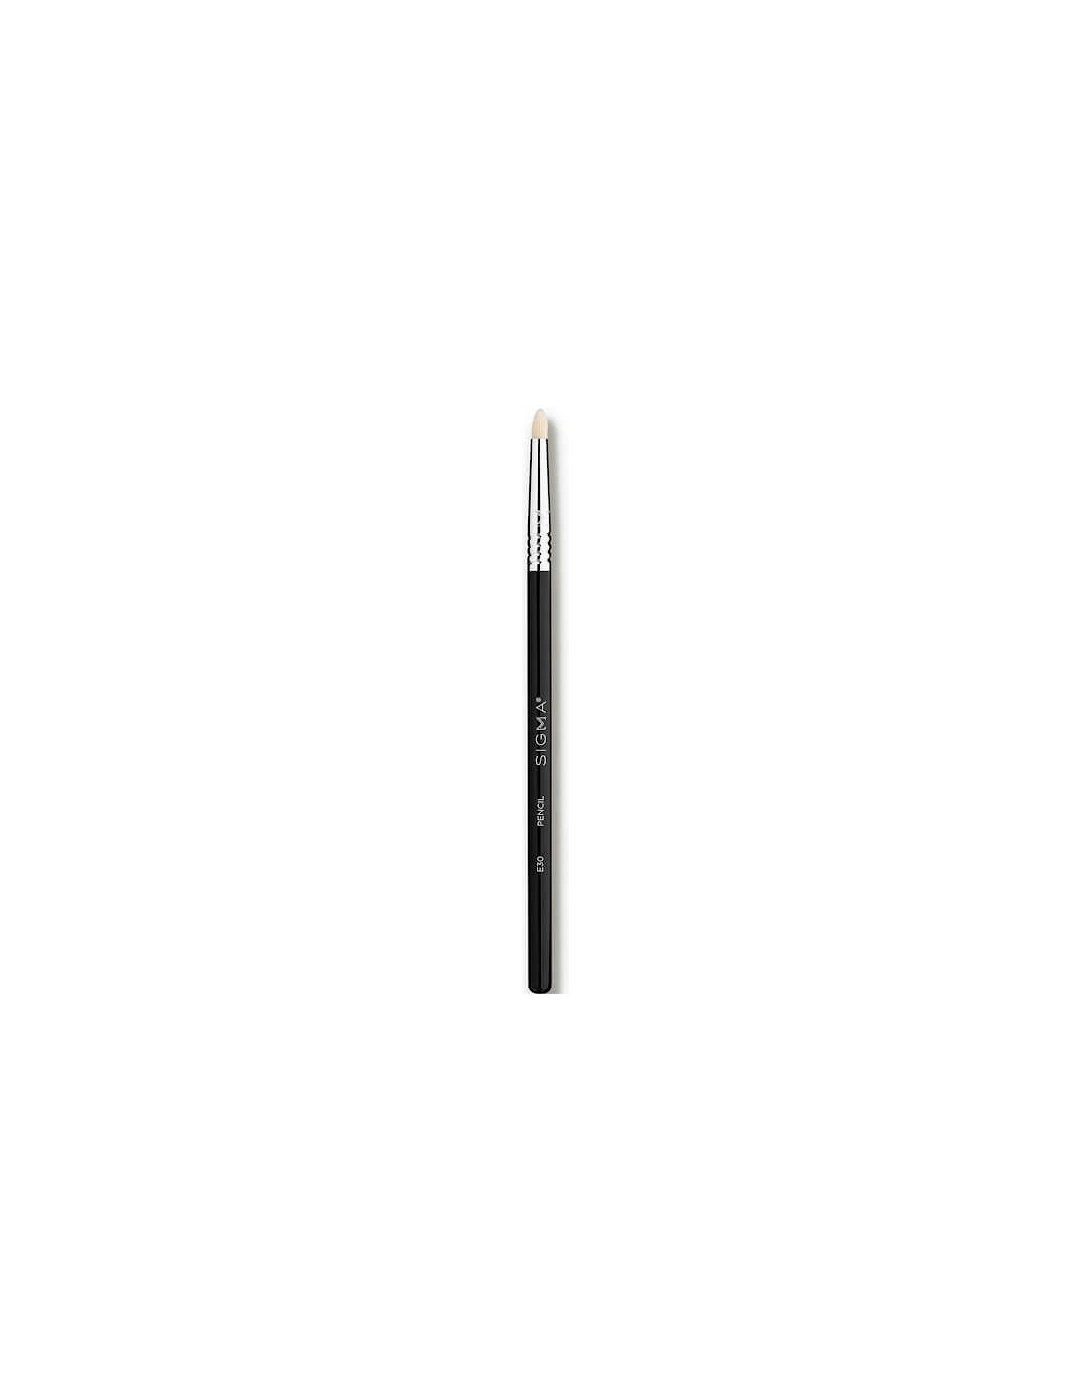 E30 Pencil Brush - Sigma, 2 of 1